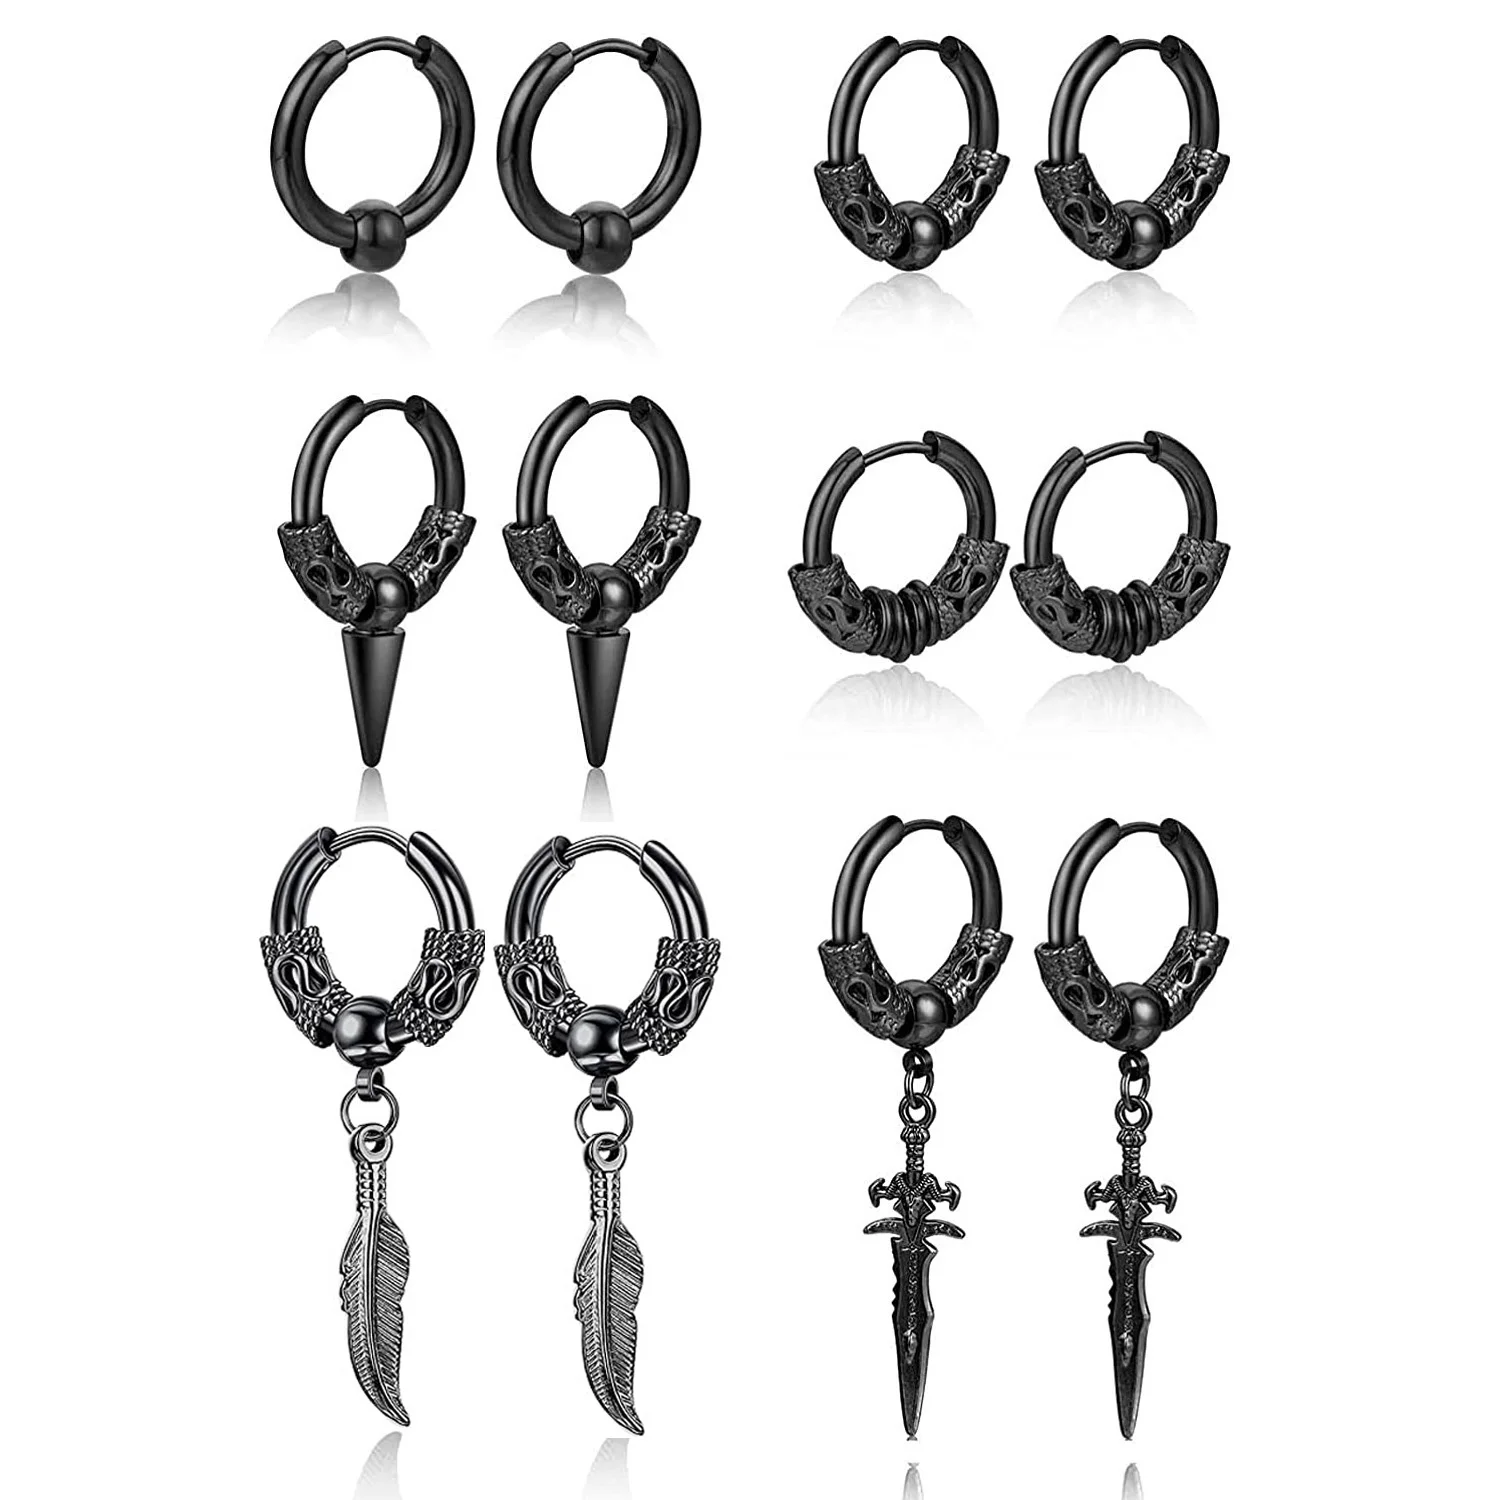 

Серьги-гвоздики WKOUD с крестом и перьями, модные круглые ювелирные украшения в стиле панк-рок из нержавеющей стали в стиле хип-хоп, черные, 6 пар